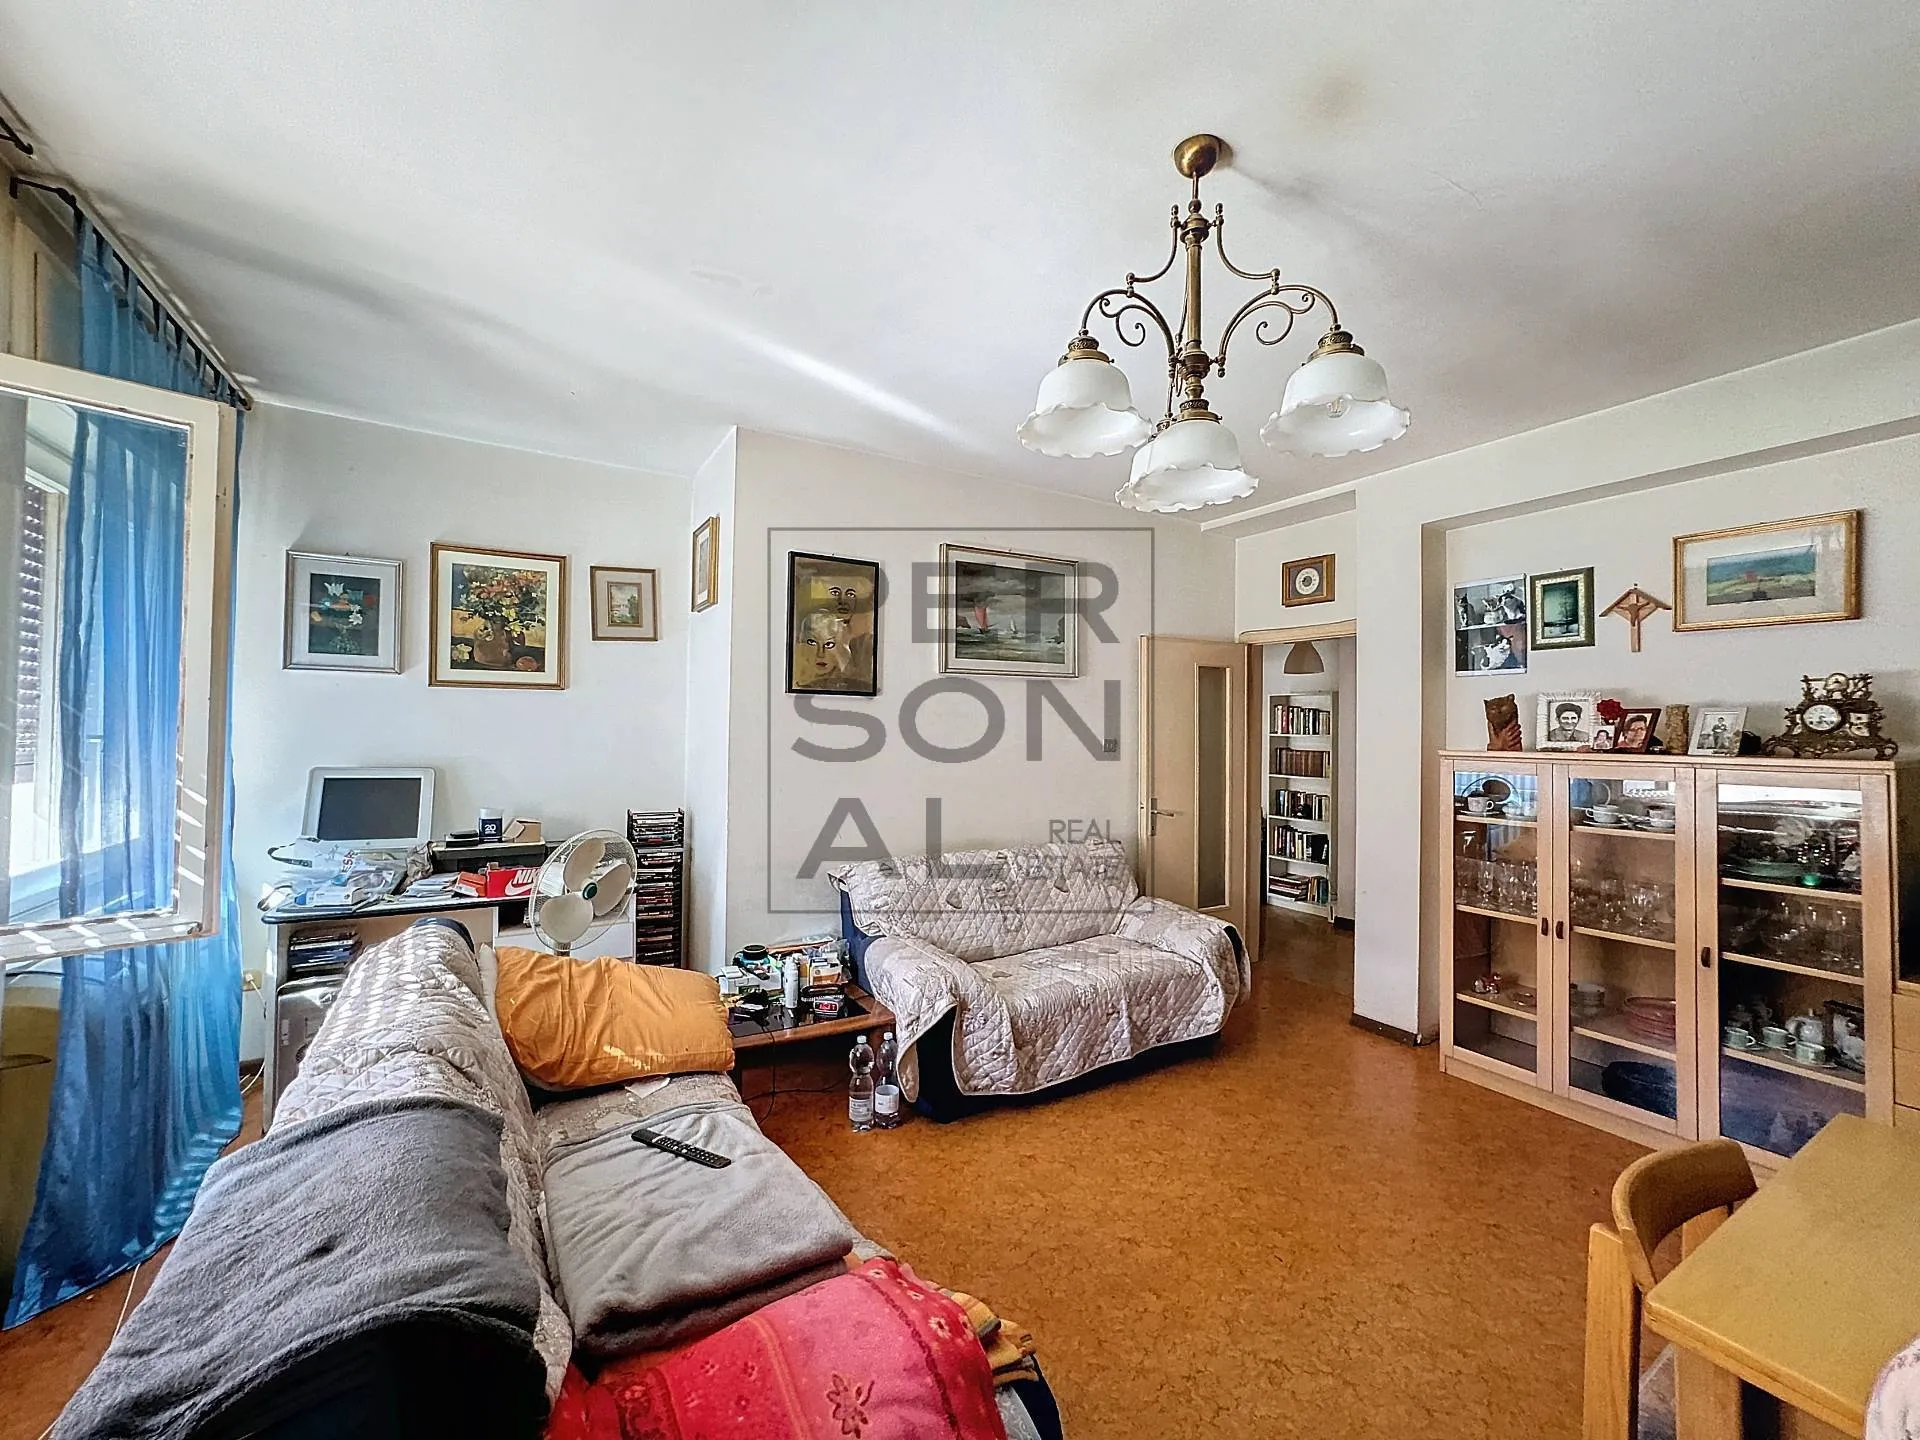 Immagine per Appartamento in vendita a Trento Piazza Generale Cantore